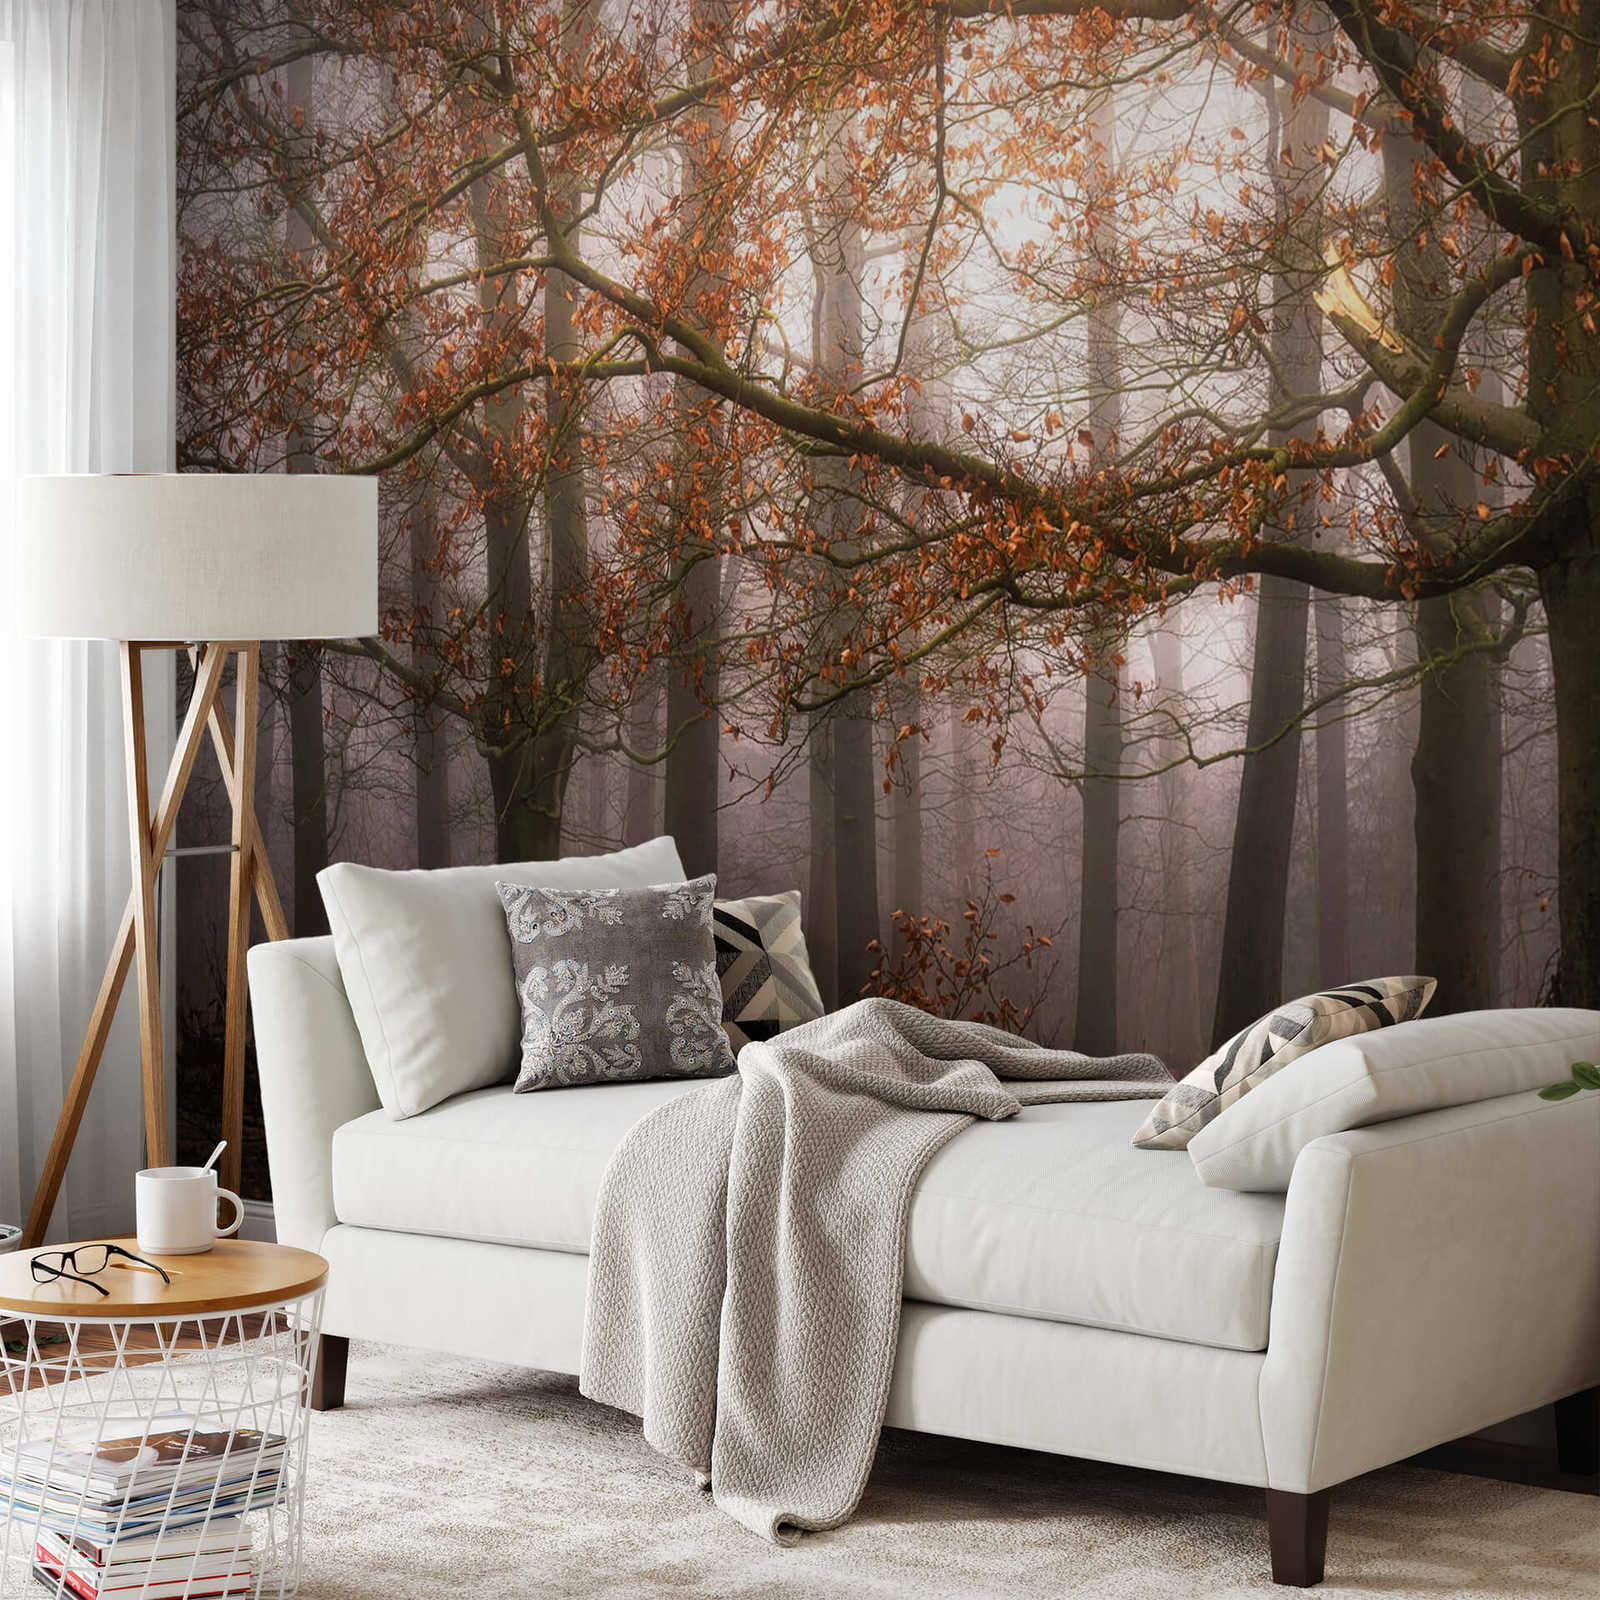             Fototapete Wald im Herbst – Braun, Orange
        